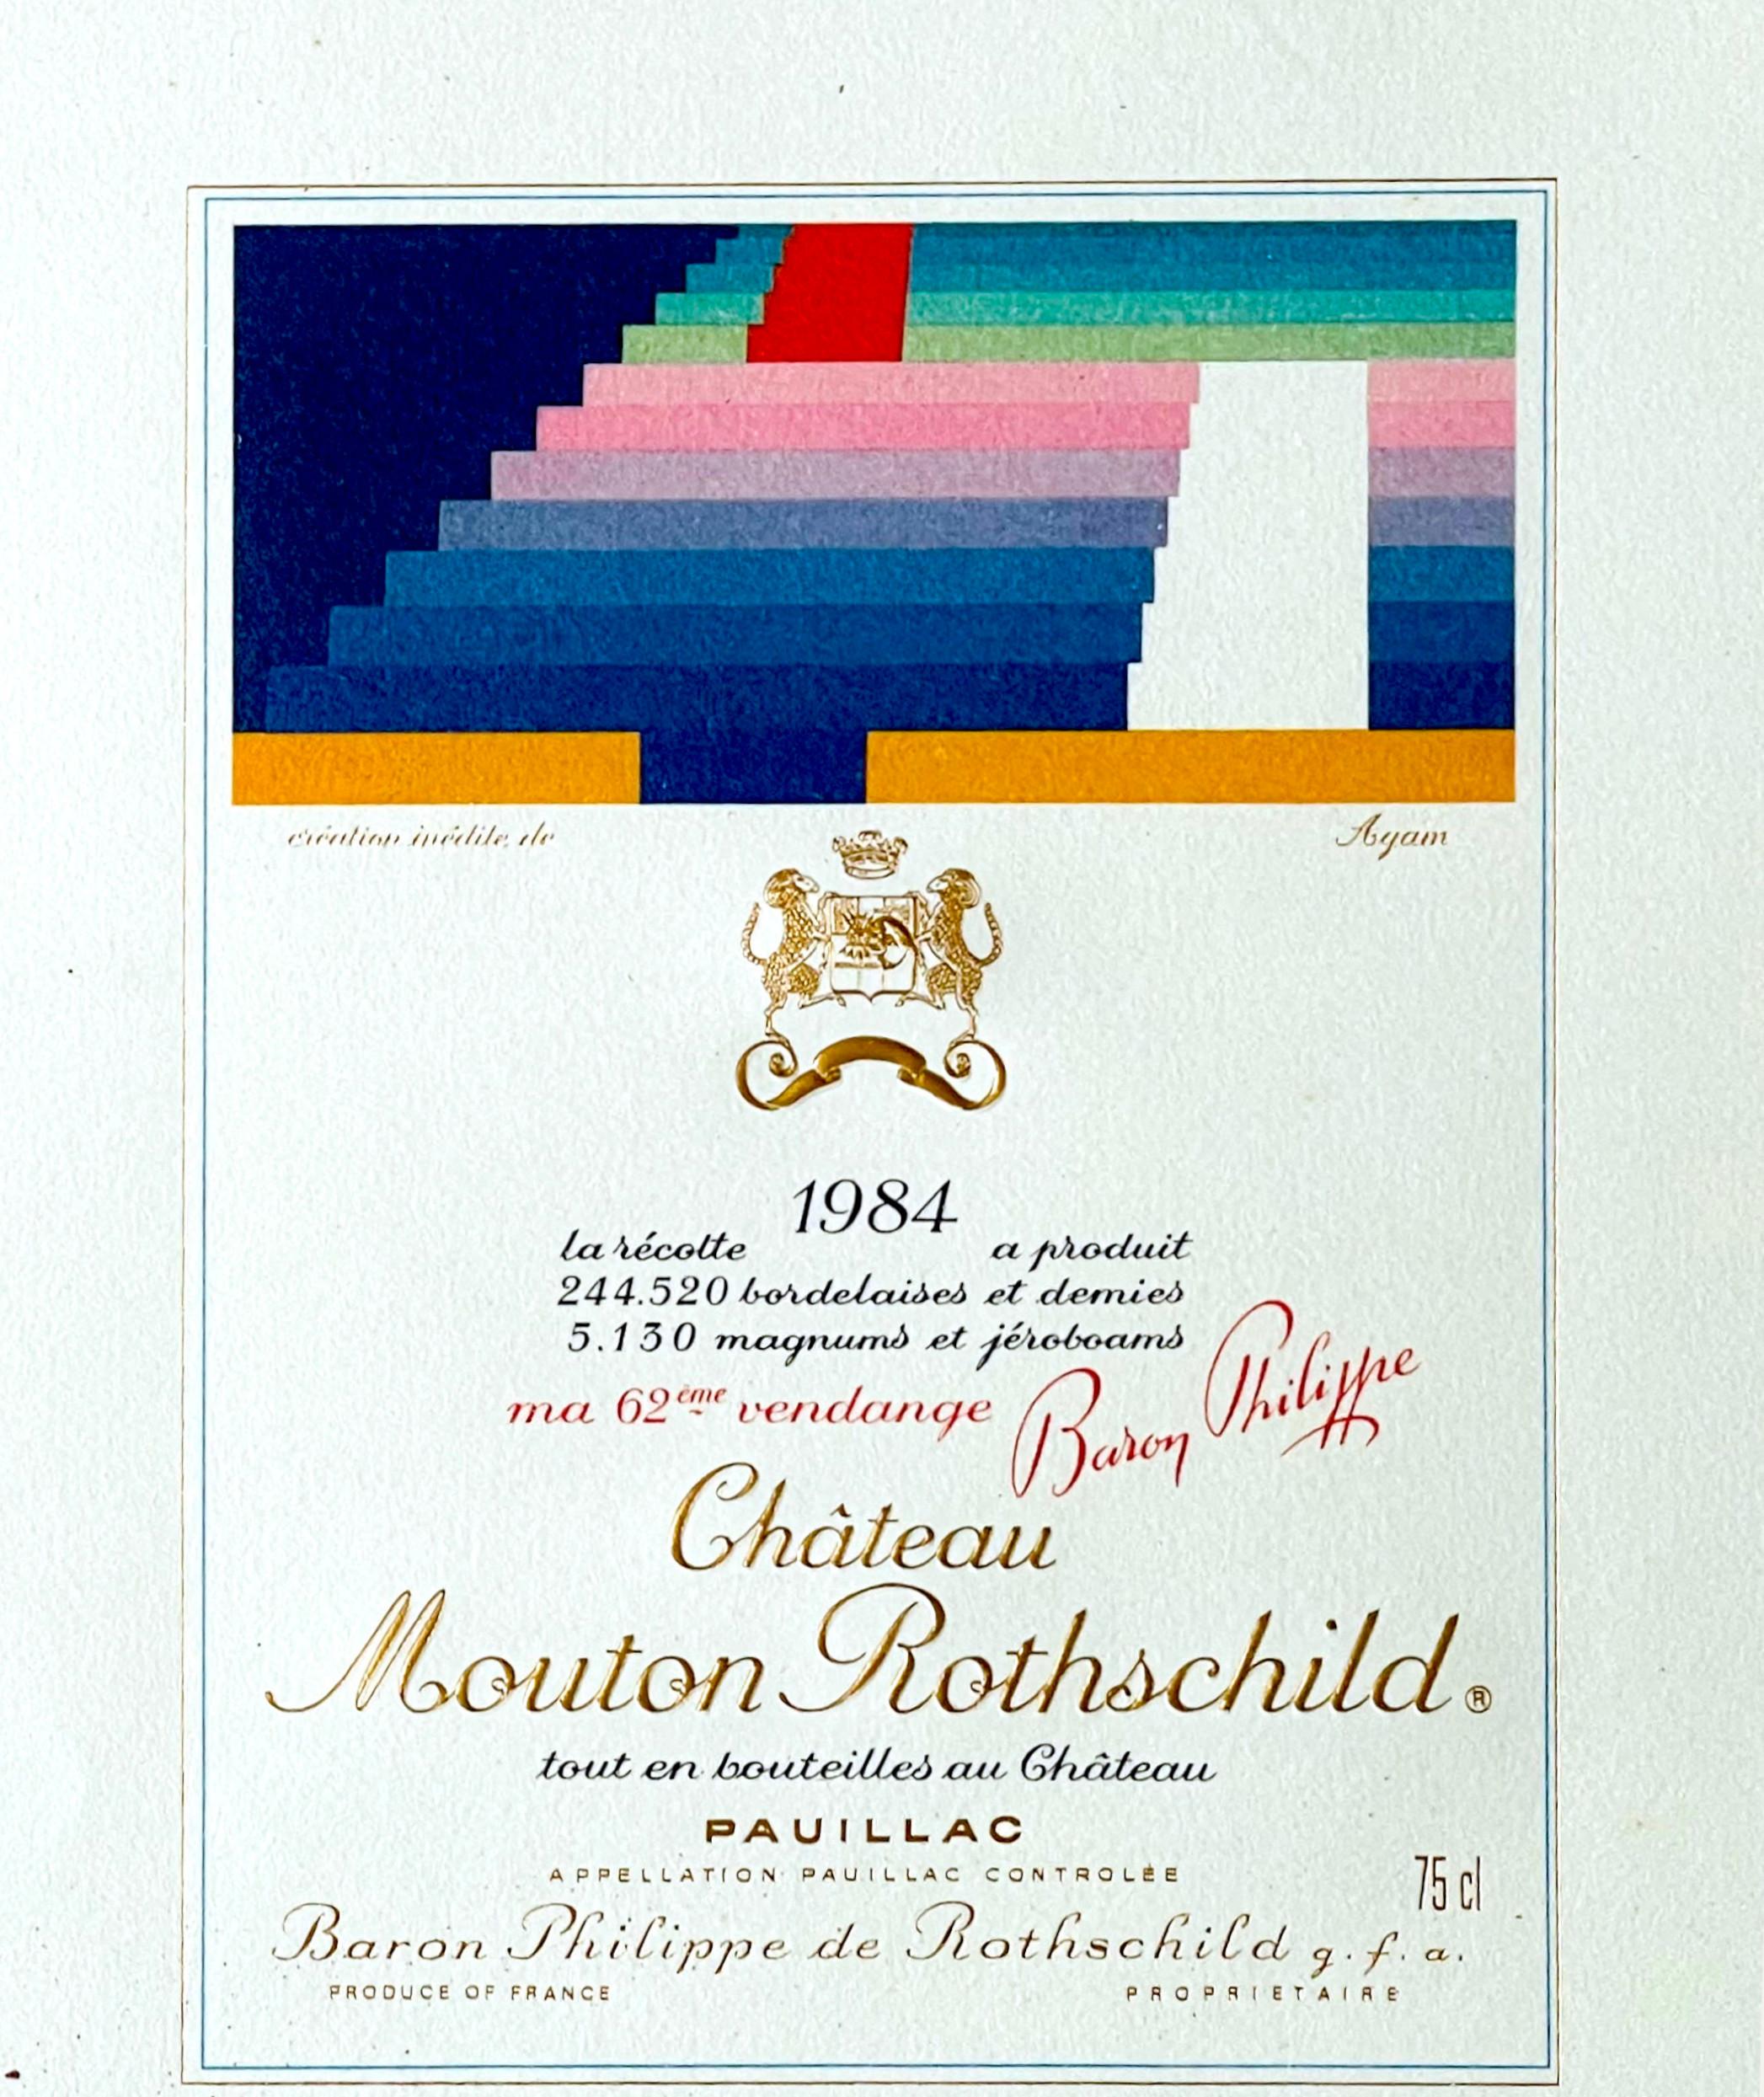 Yaacov Agam
Étiquette du Château Mouton Rothschild (signée à la main), 1984
Lithographie offset (signée par Yaacov Agam)
Signé à la main deux fois en noir et rouge par l'artiste au recto.
Cadre inclus : maintenu dans le cadre d'époque en métal